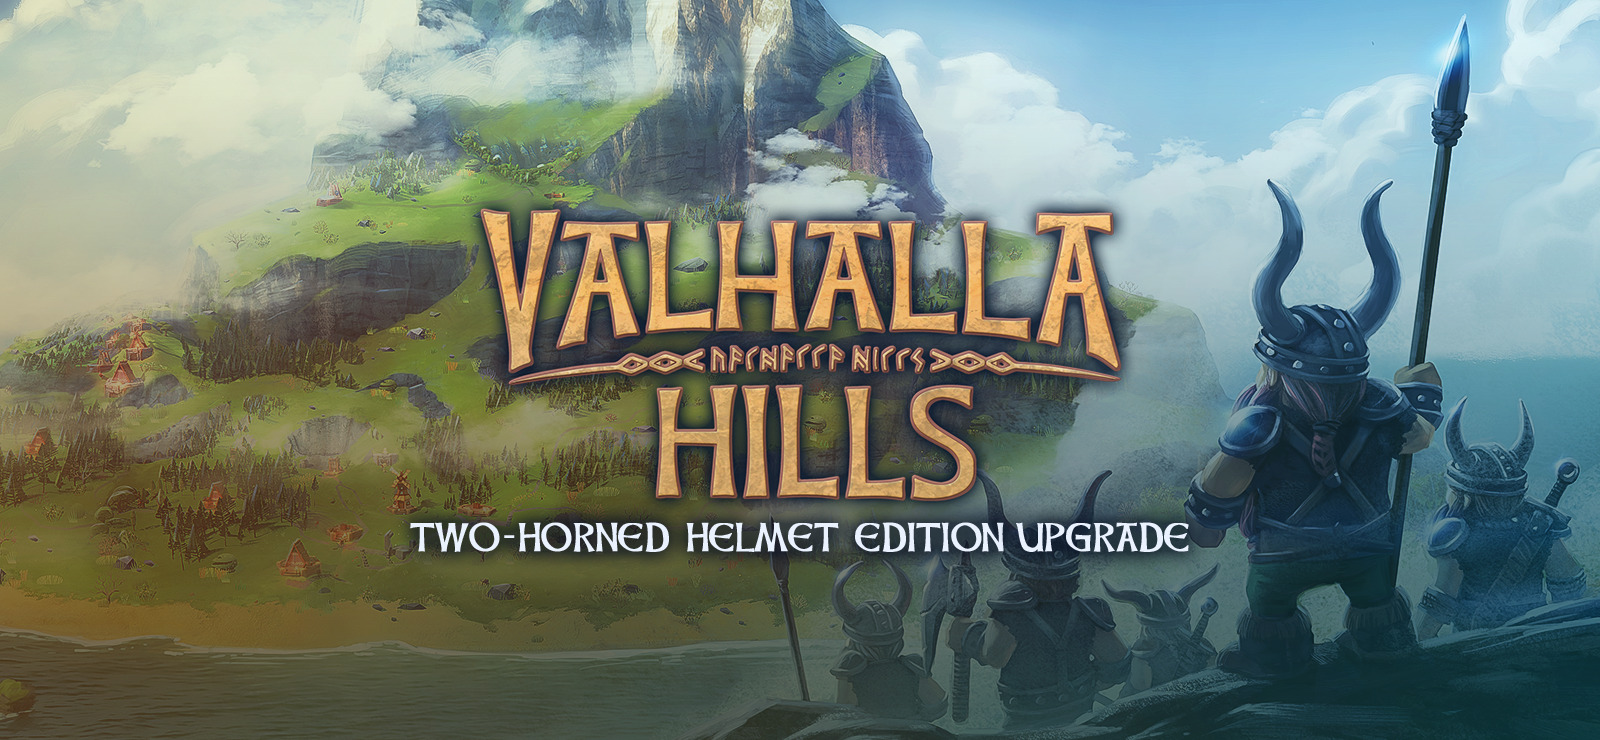 valhalla hills ps4 game was erased